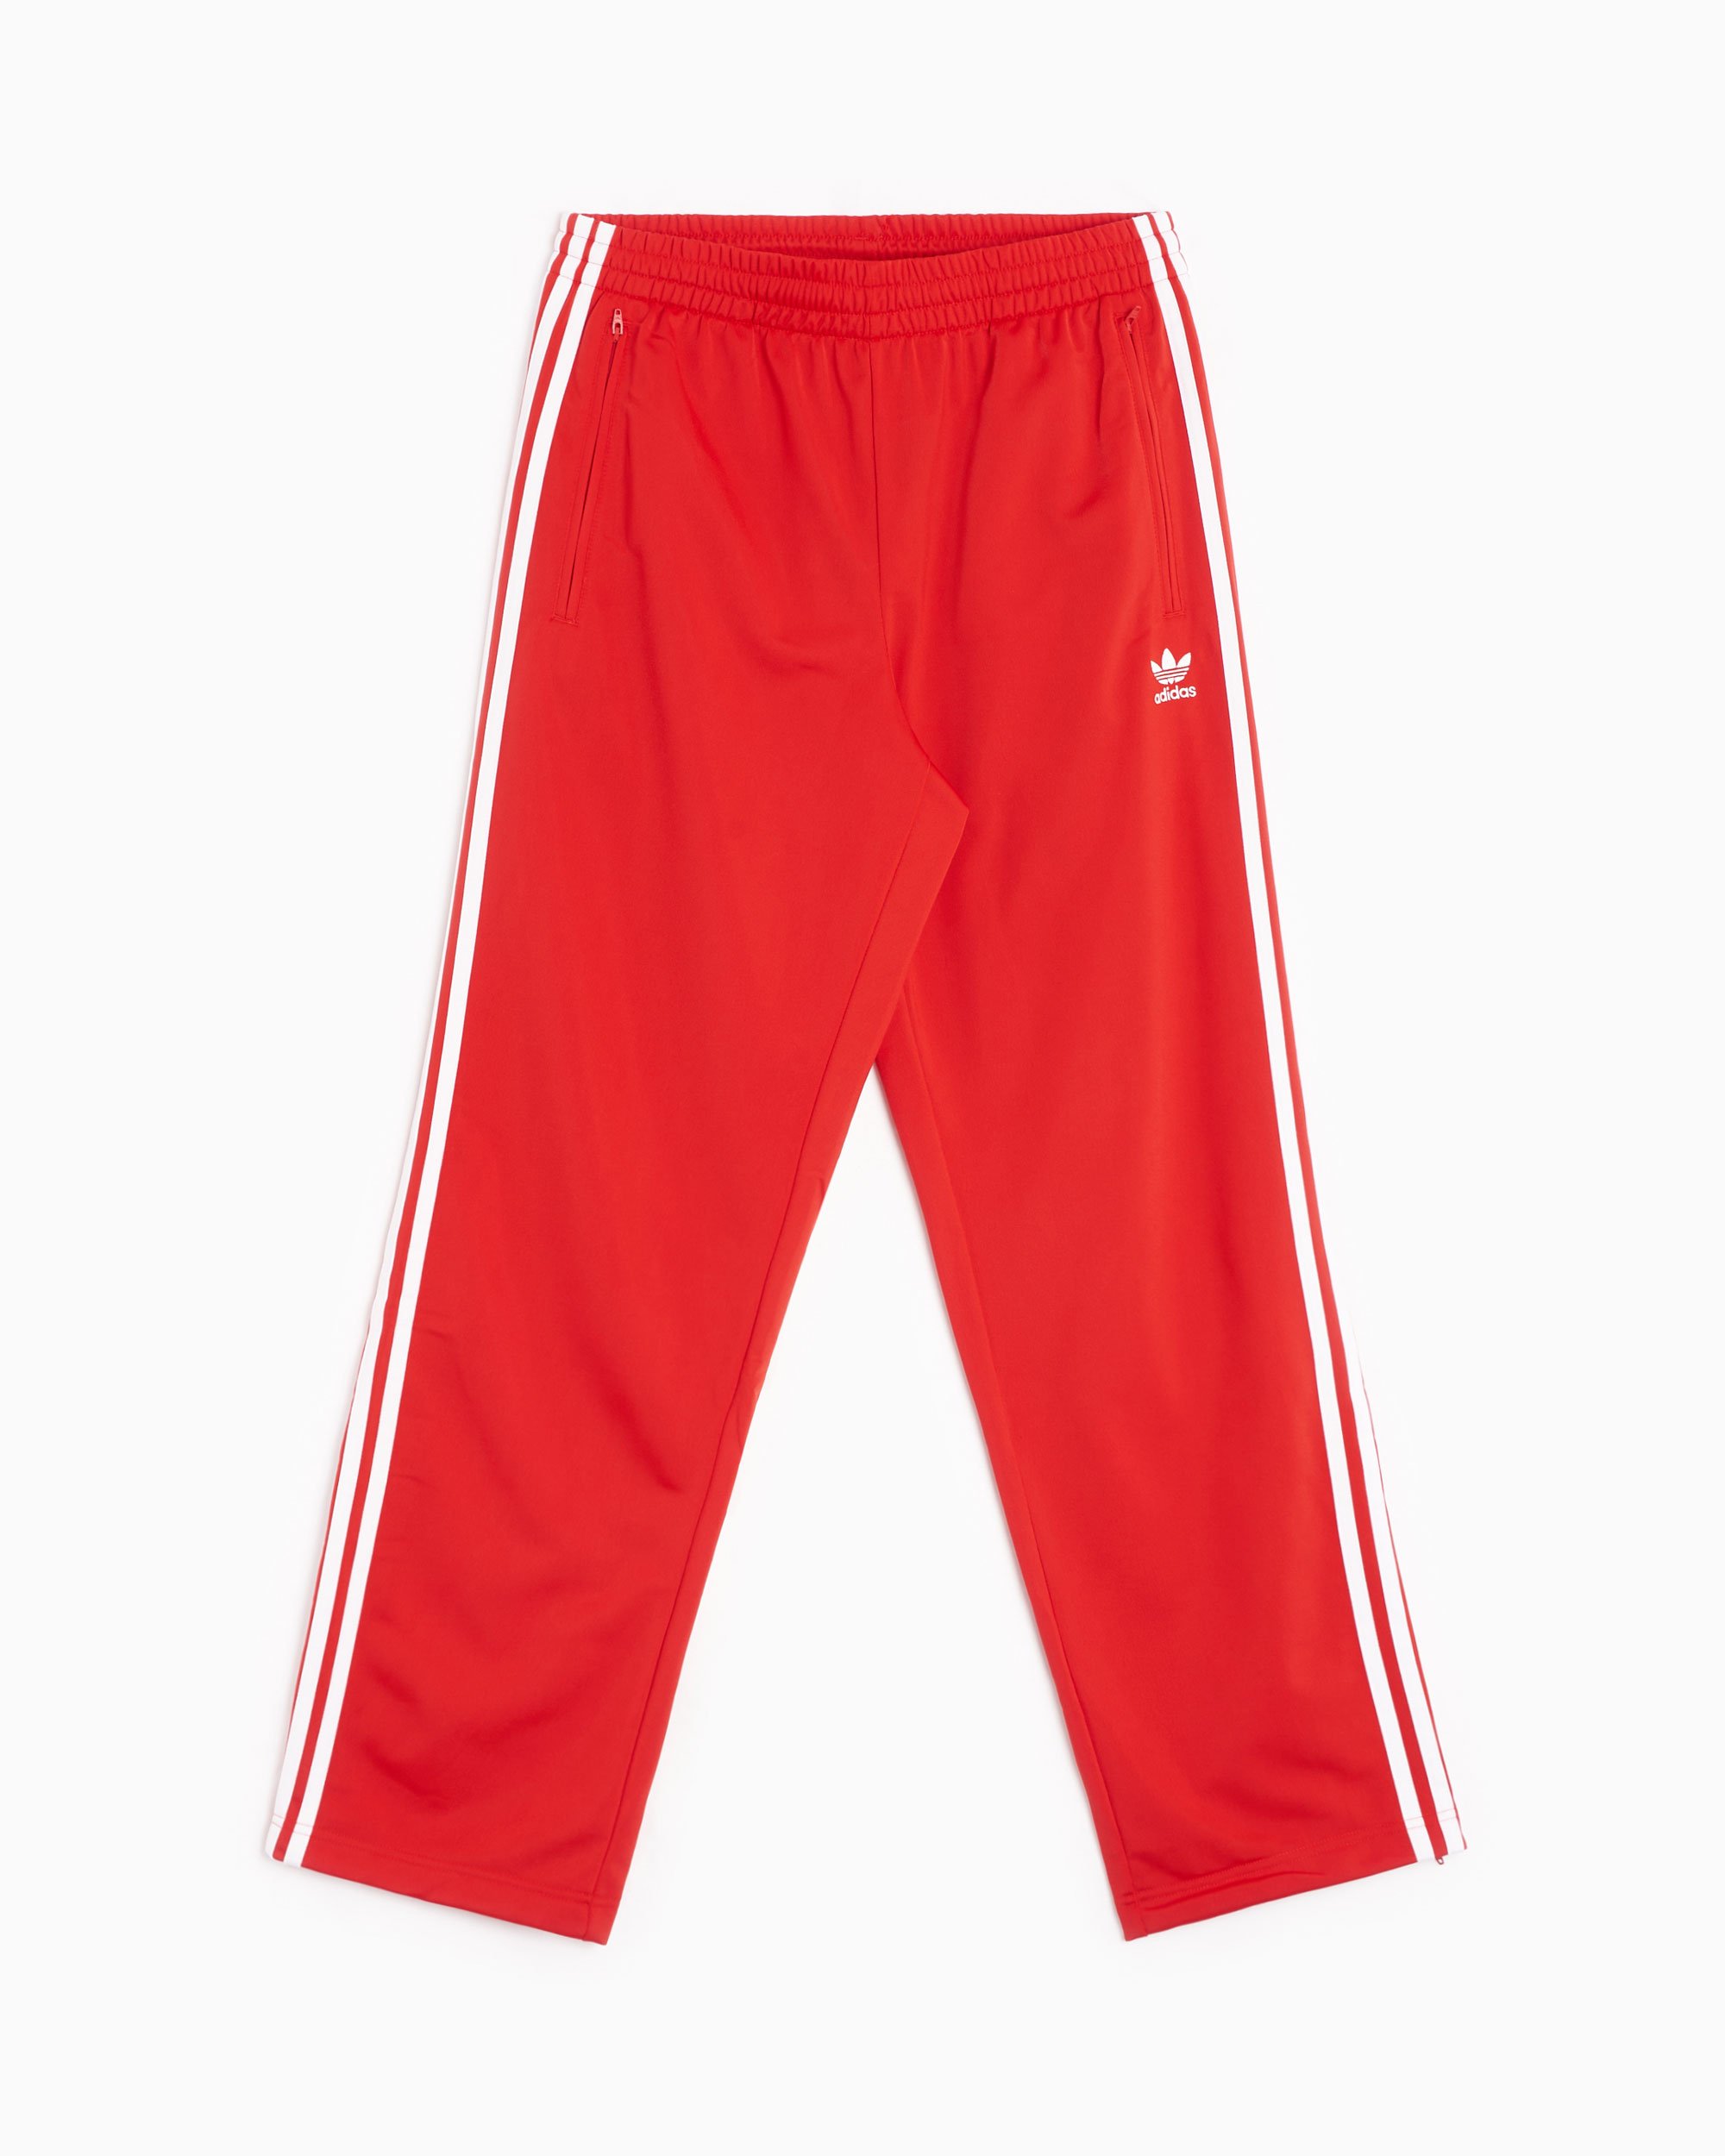 adidas Originals Adicolor Classics Firebird Men's Track Pants Red IJ7057